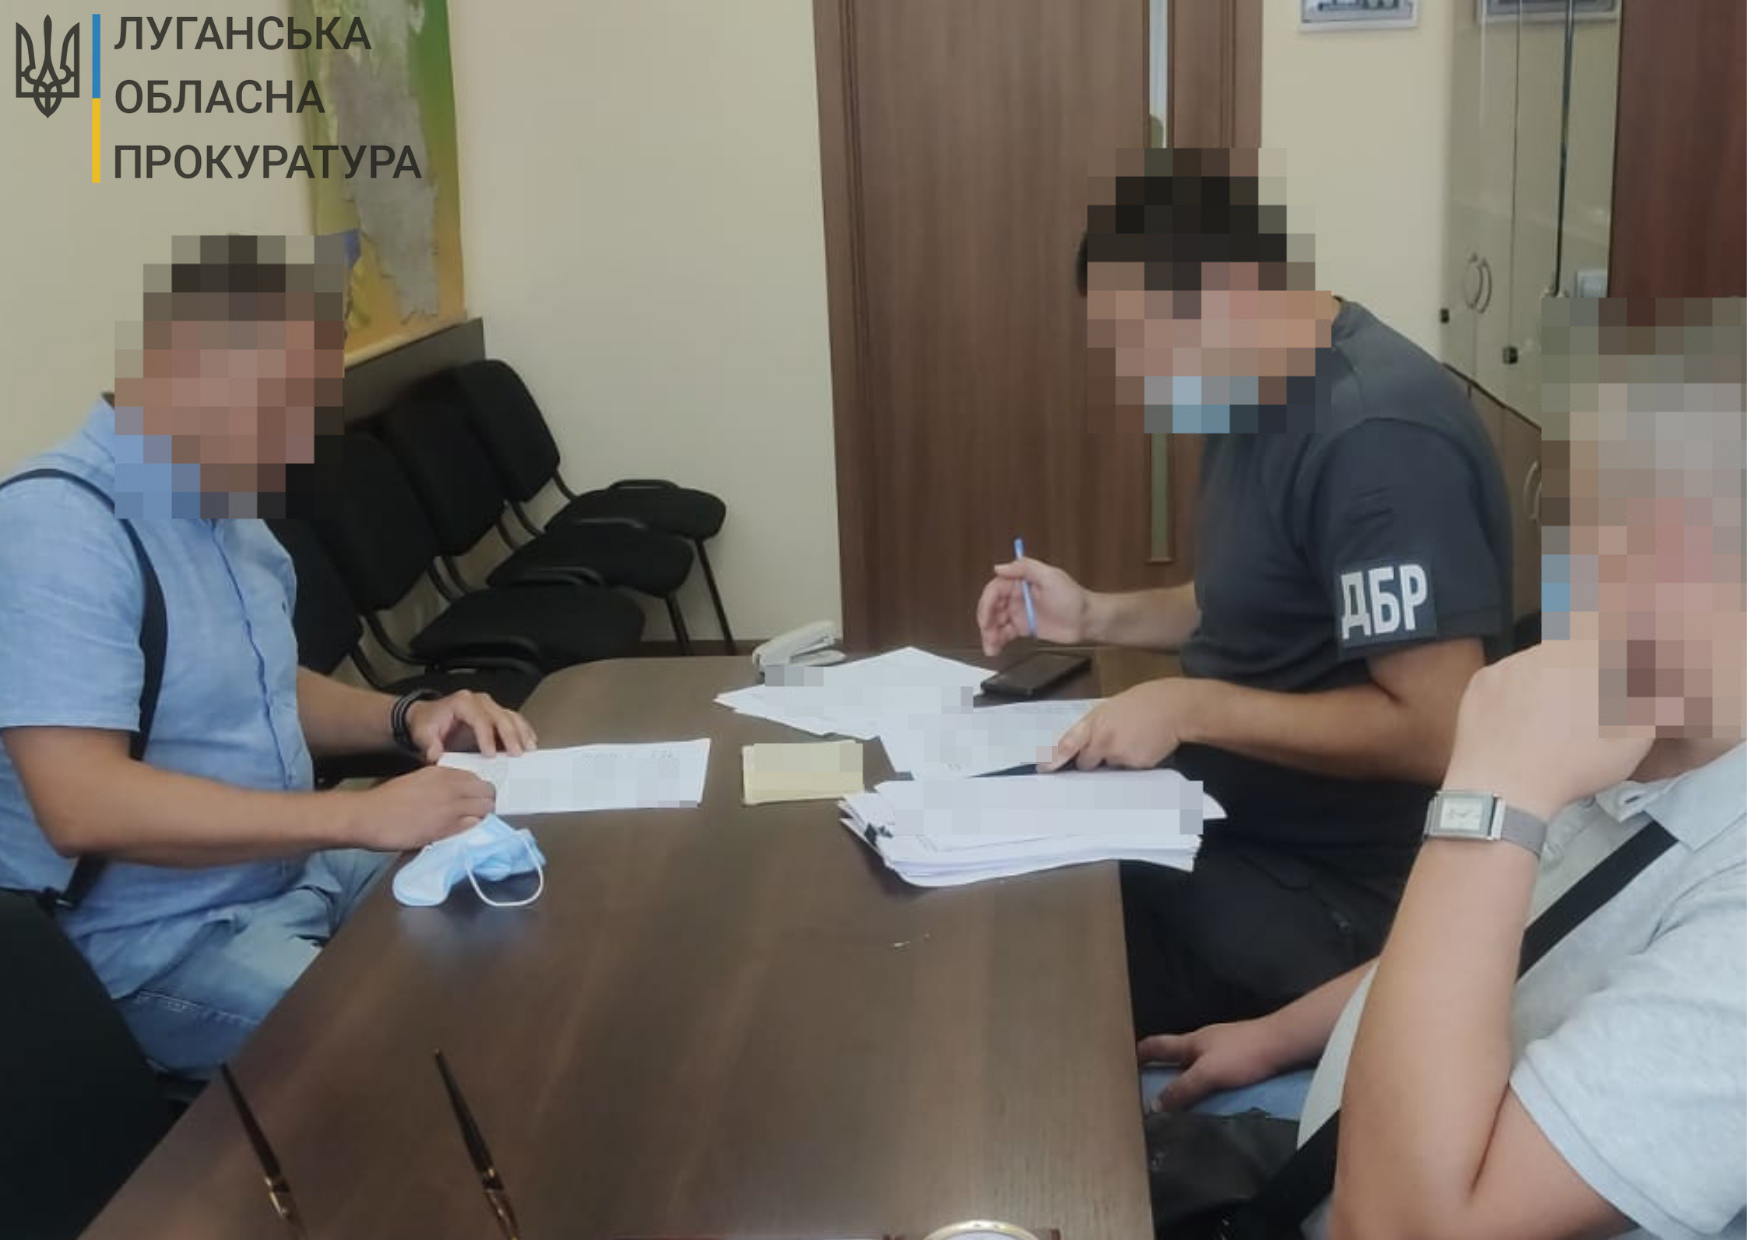 Службова недбалість зі збитками у майже 420 тис грн – на Луганщині повідомлено про підозру ексспівробітнику поліції (ФОТО)